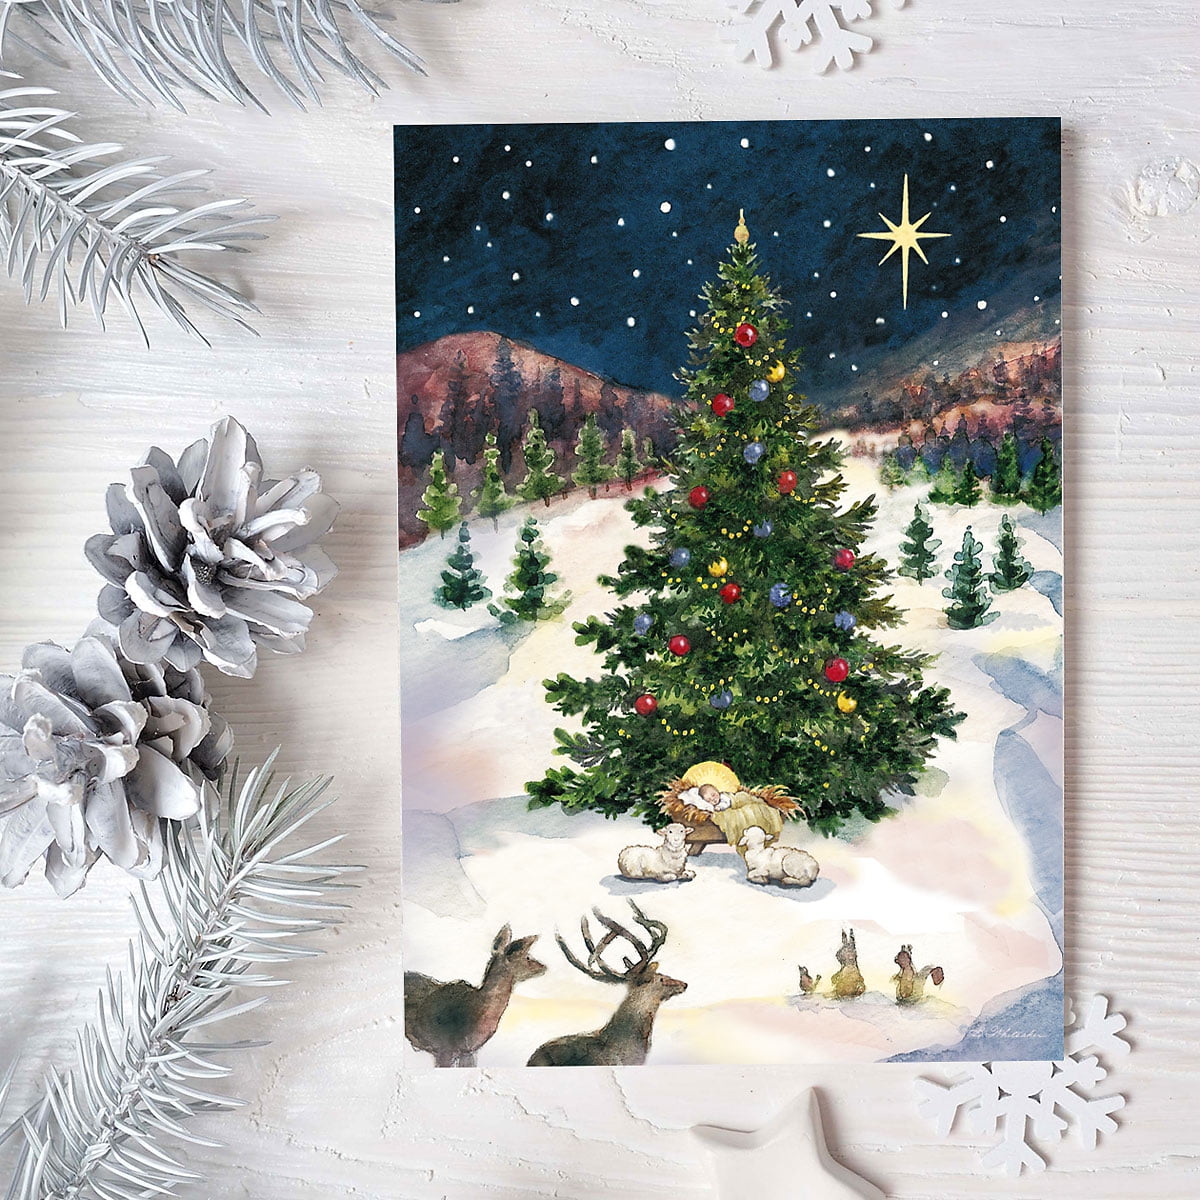 Merry Christmas Tree & Manger Religious Christmas Cards - Set of 18 Cards - Walmart.com